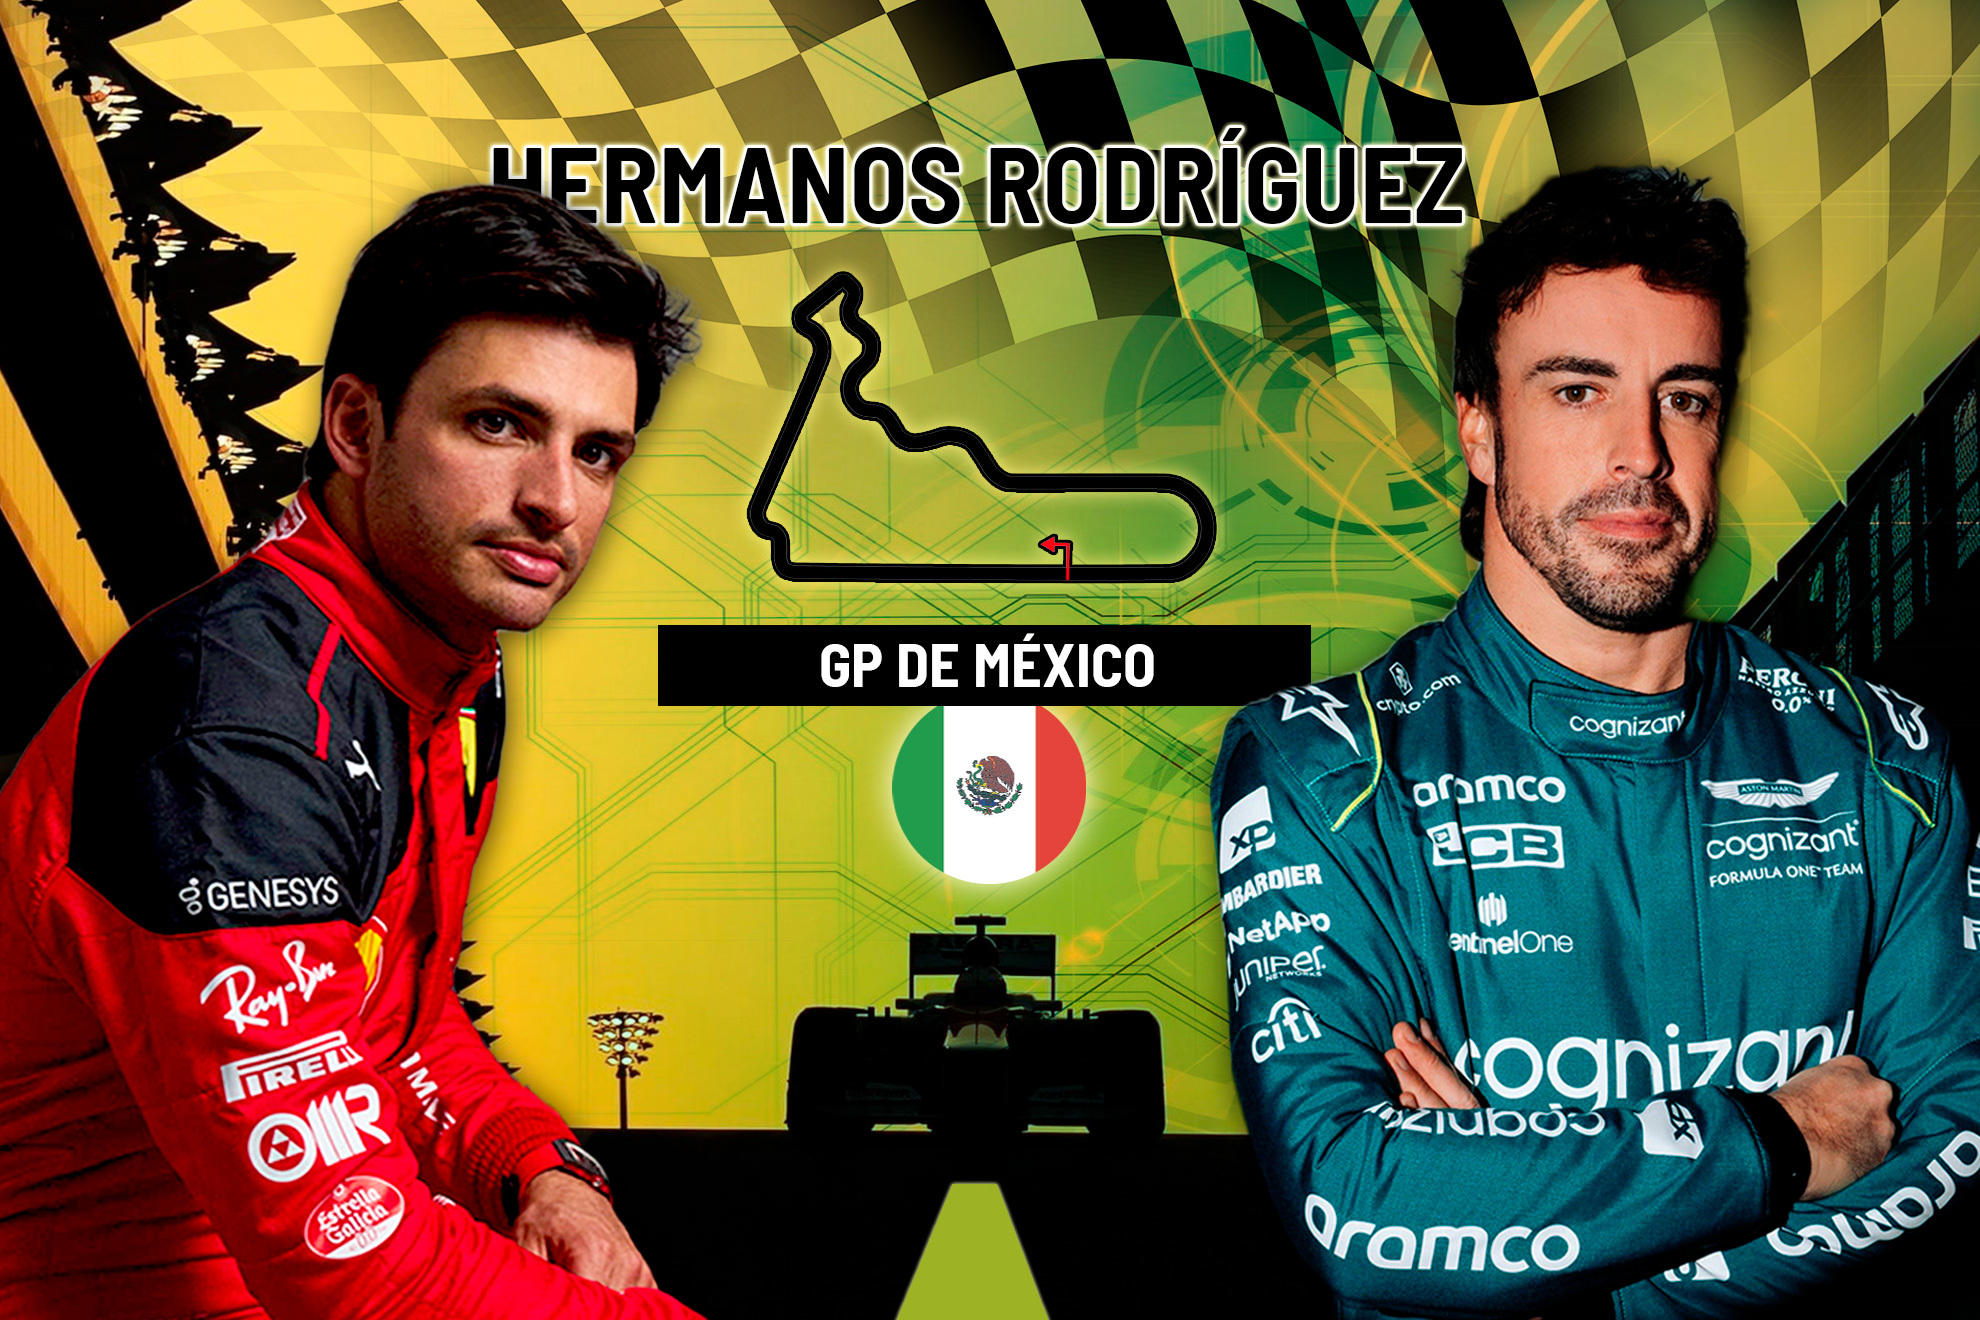 Carrera del GP de Mexico de F1: a qué hora es, parrilla, canal y dónde ver hoy en TV y online en directo